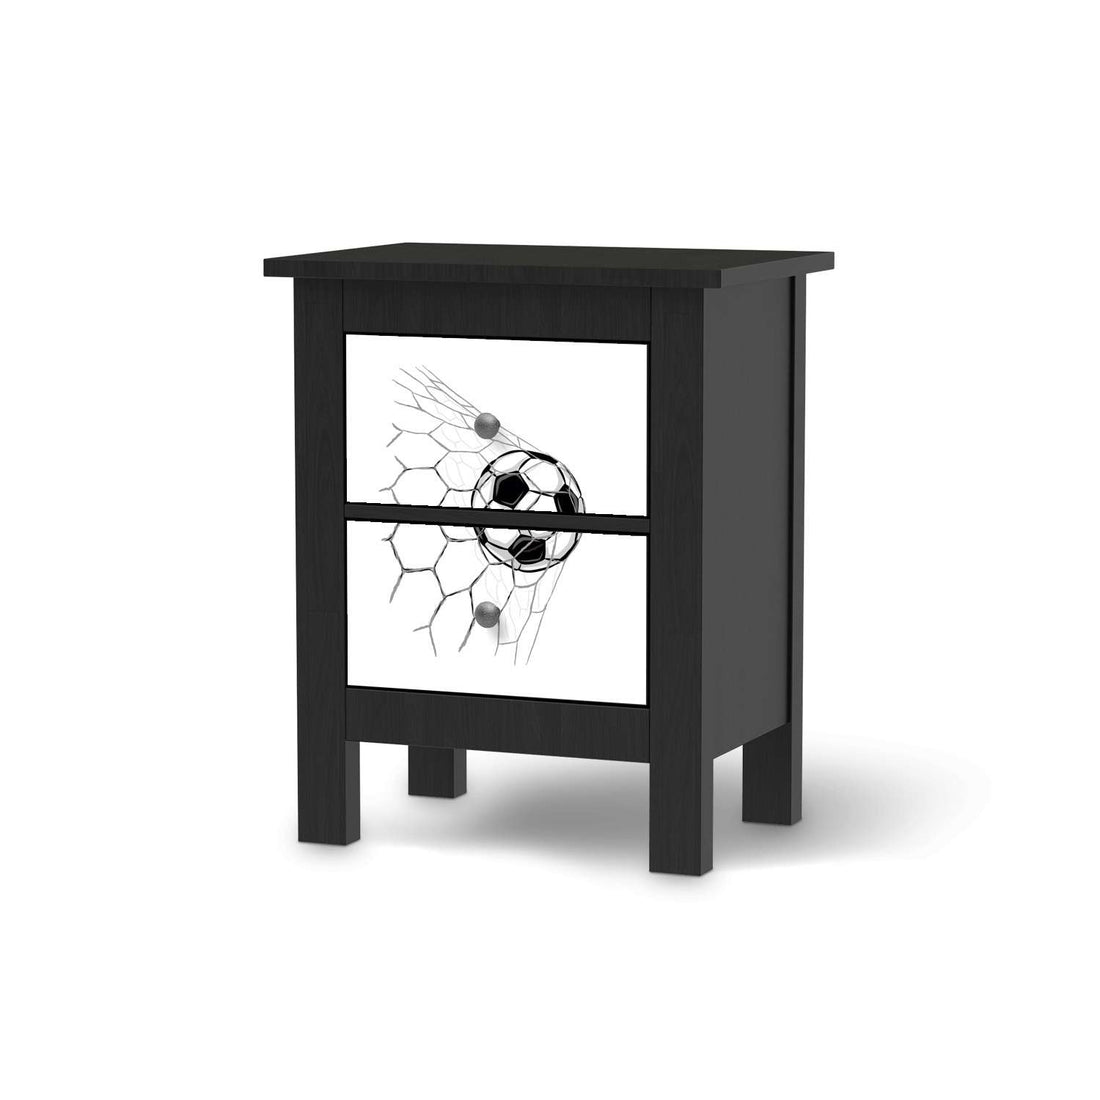 Selbstklebende Folie Eingenetzt - IKEA Hemnes Kommode 2 Schubladen - schwarz